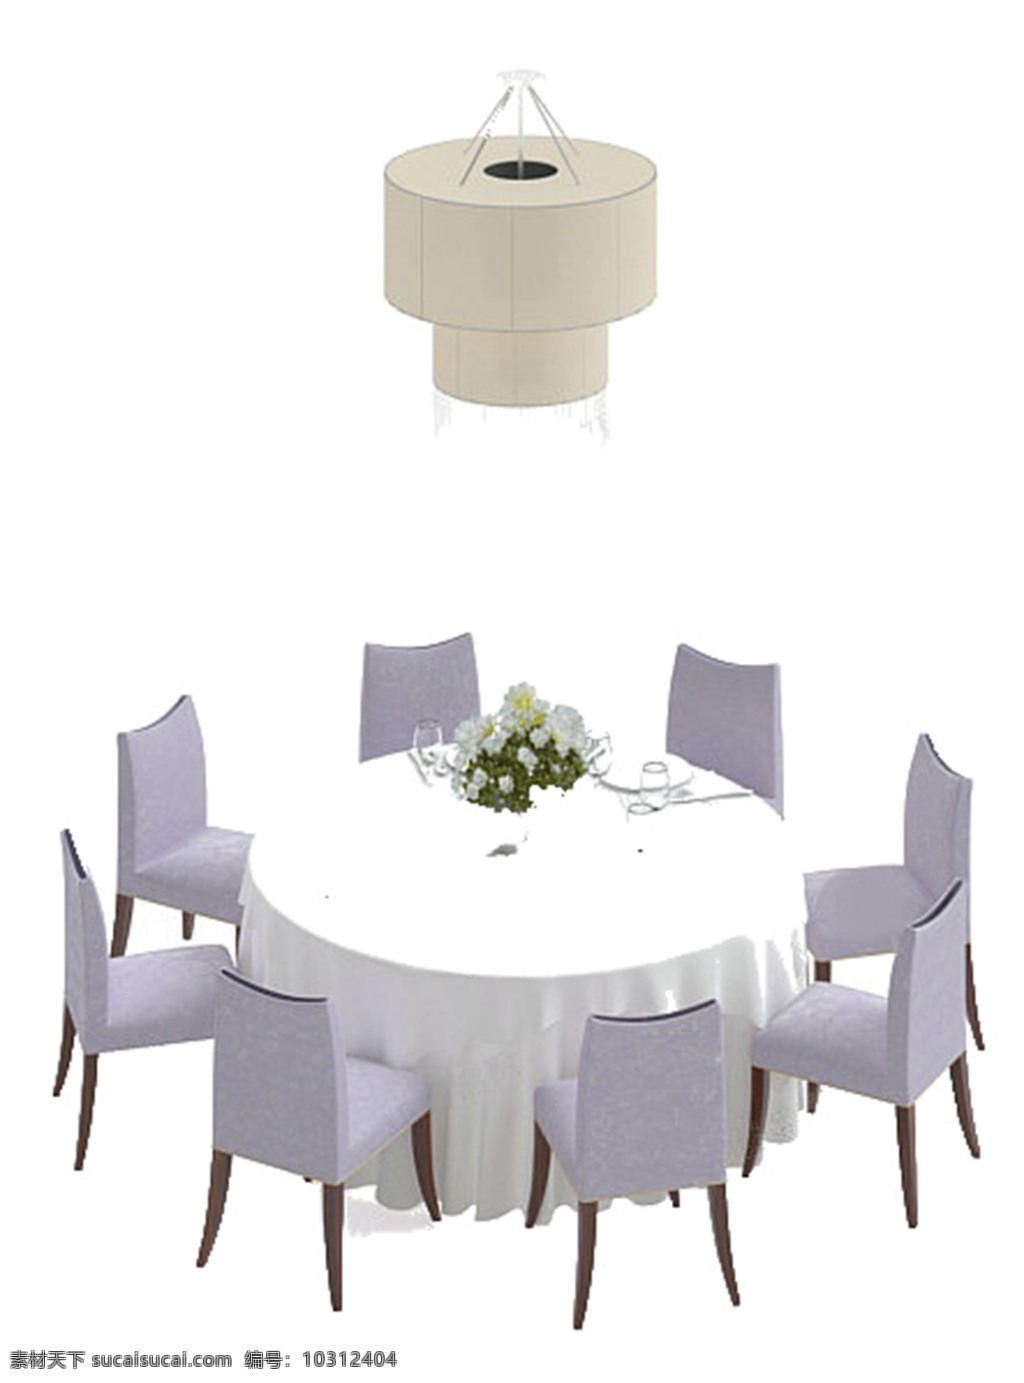 家具 组合 模板下载 餐桌椅 模型 靠枕 餐厅 饭店 餐椅 餐桌 有贴图 家具组合 max 白色